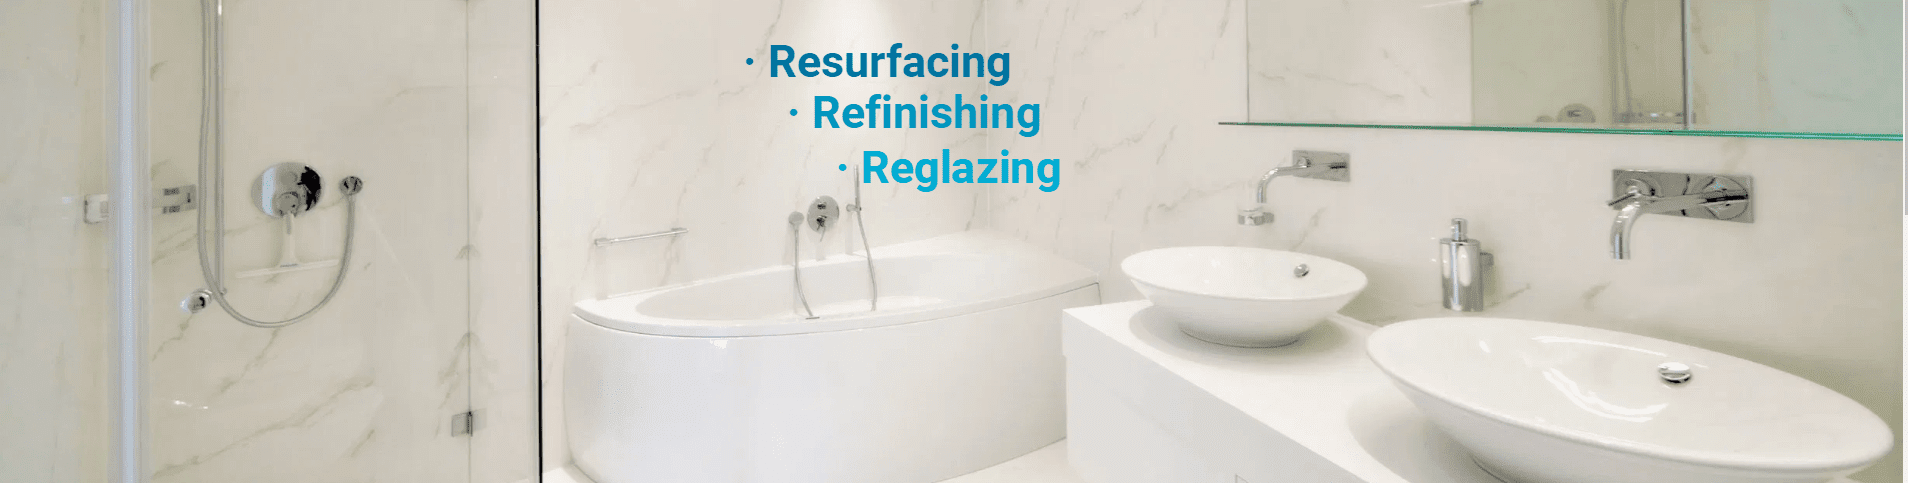 a+ bathtub refinishing slider home page